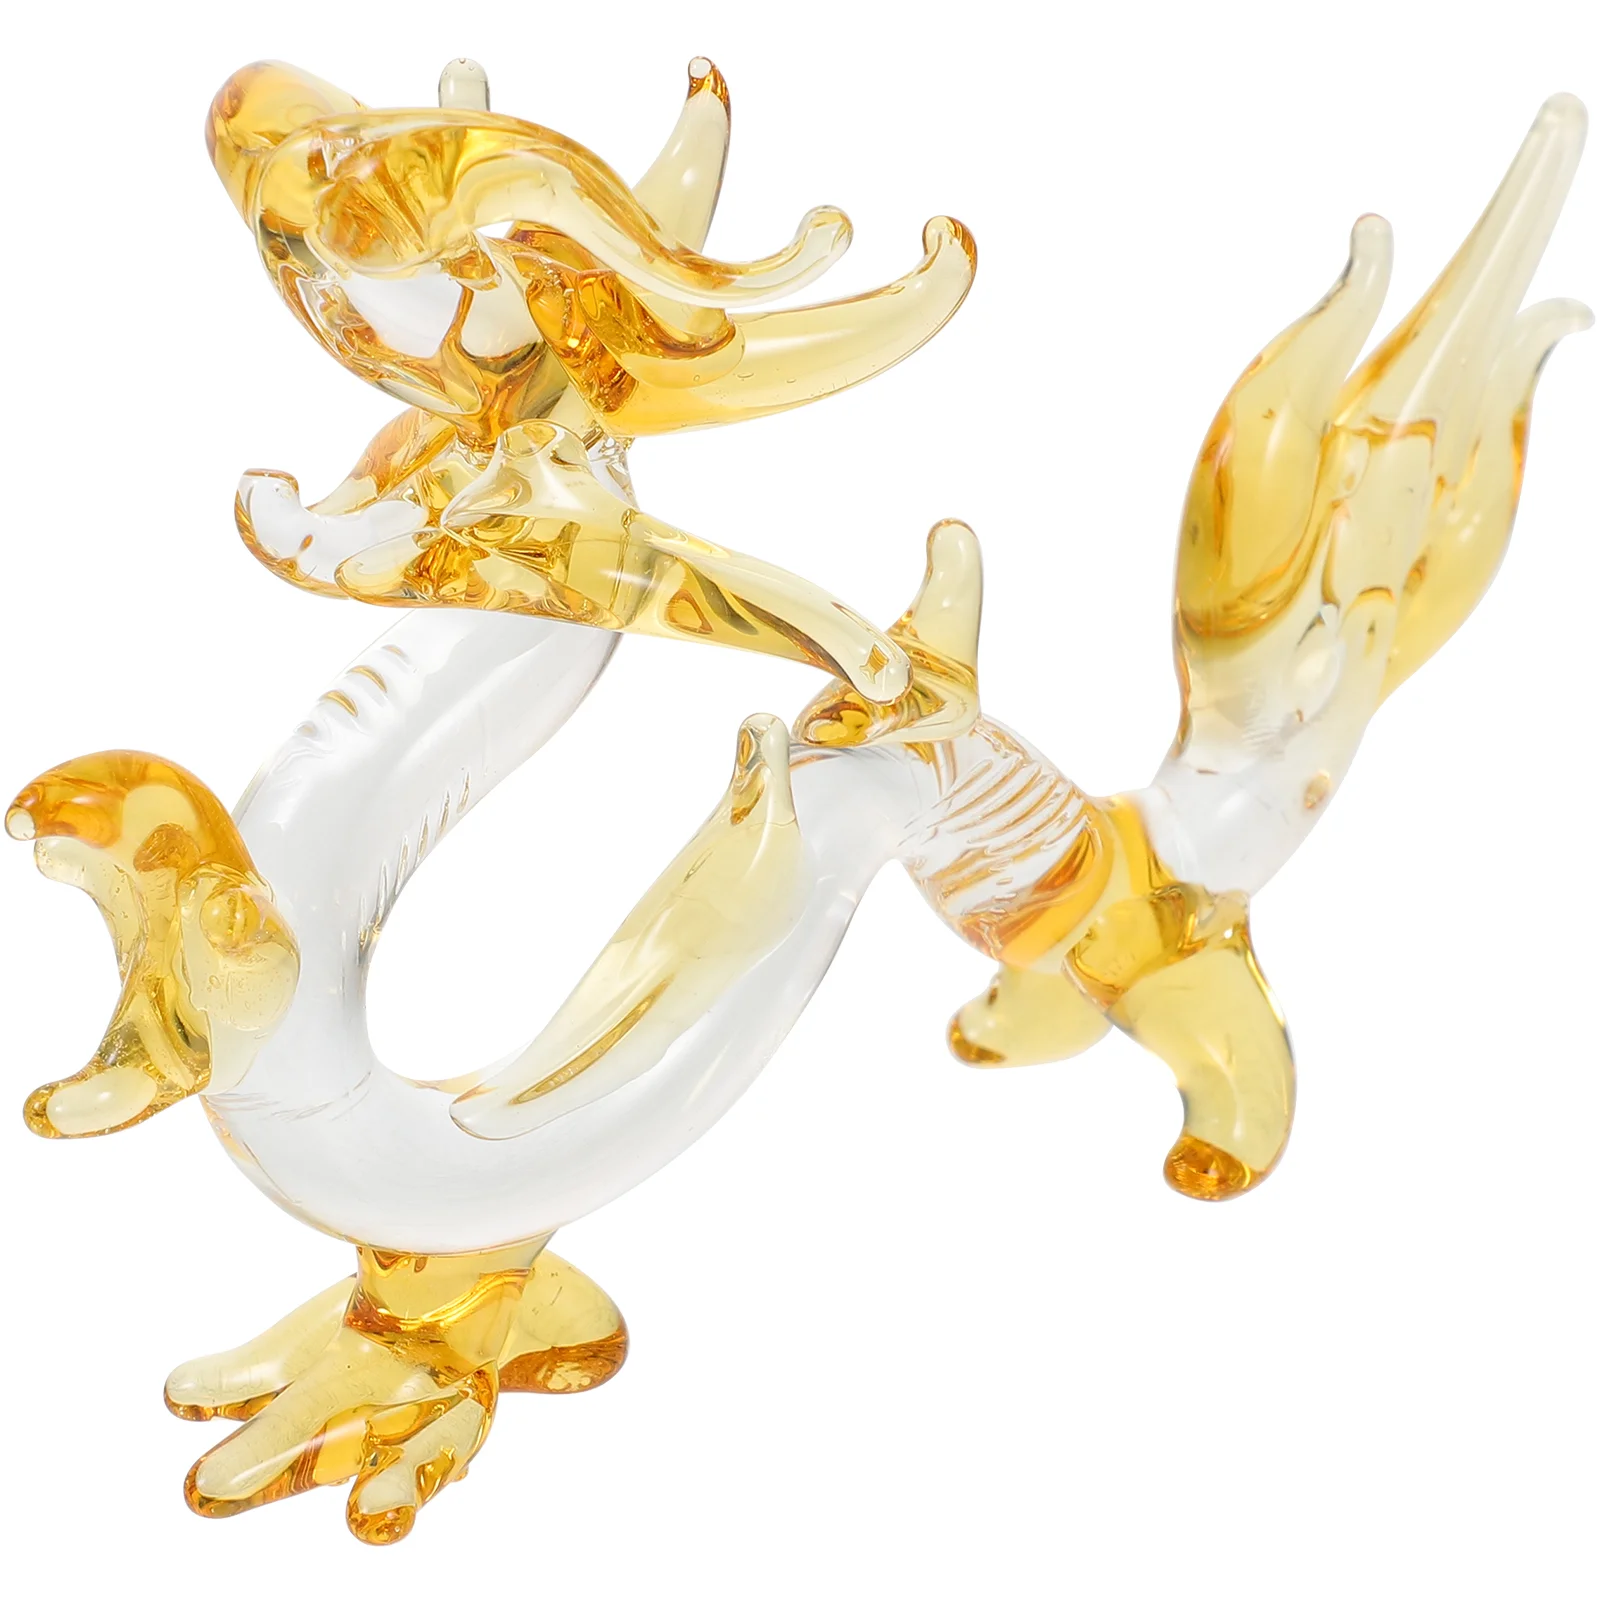 

Dragon Ornament Crystal Figure Figurine Desktop Animal Statue Delicate Sculpture Decoration Figurines Tabletop